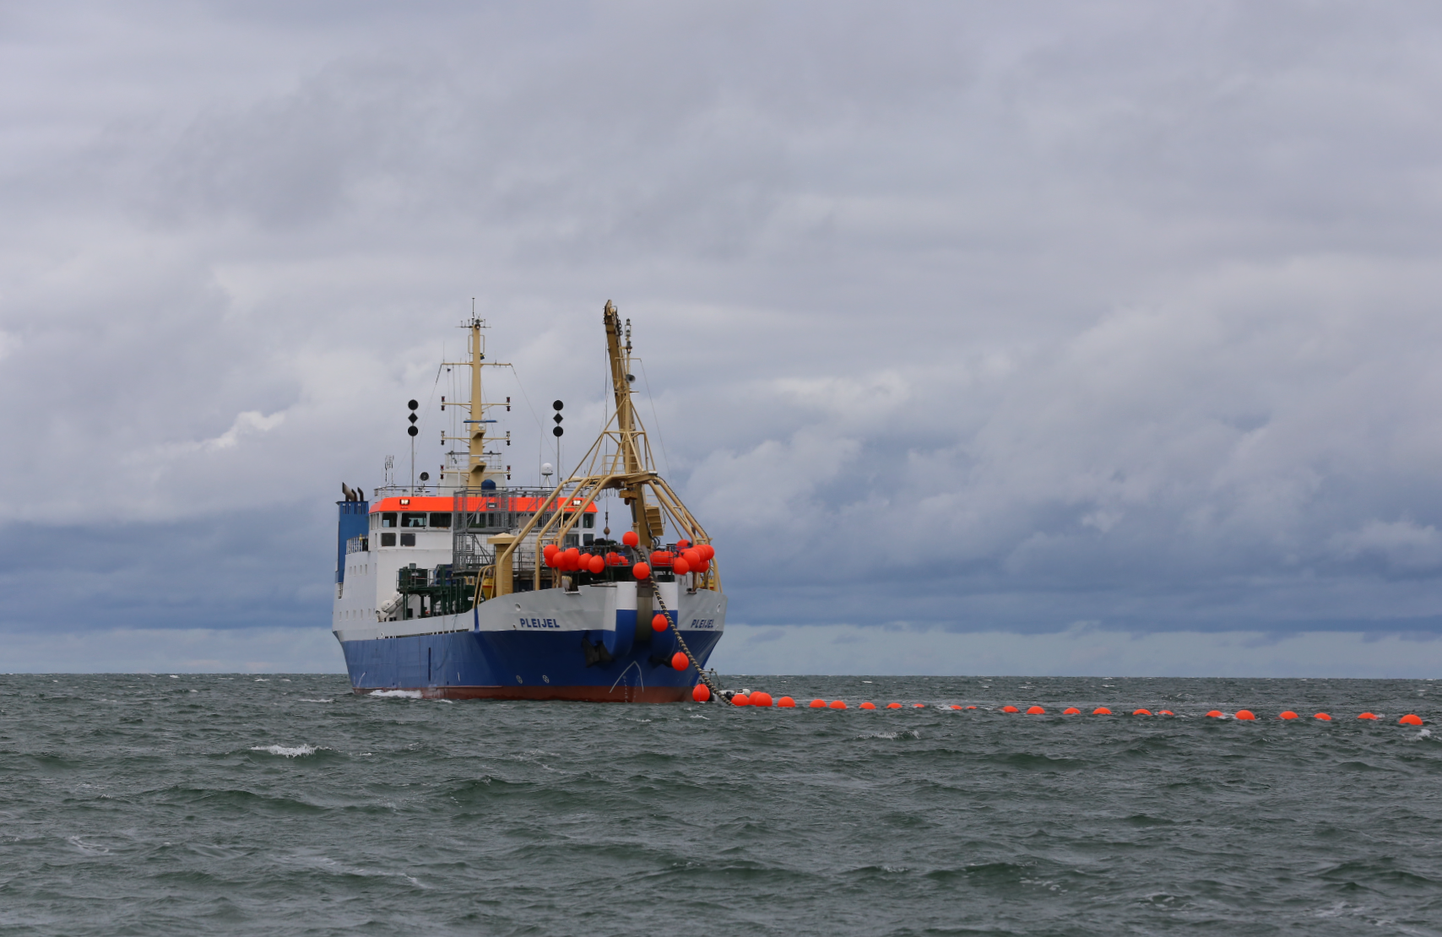 Eelmist merealust kaablit paigaldav laev Väikses väinas 2019. aastal